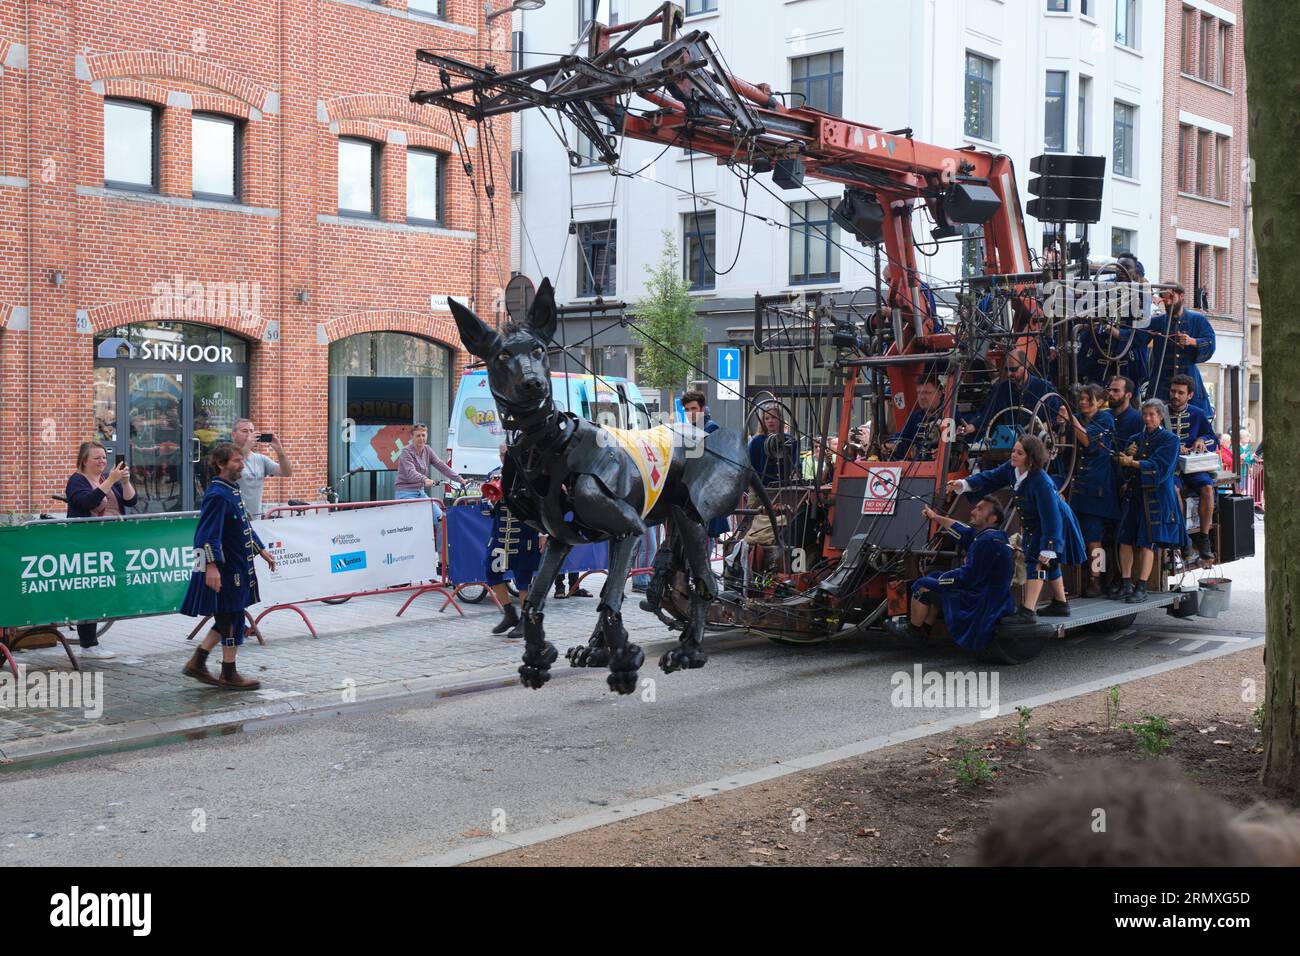 Royal de Luxe marionette street theatre perform in Antwerp, Belgium Stock Photo